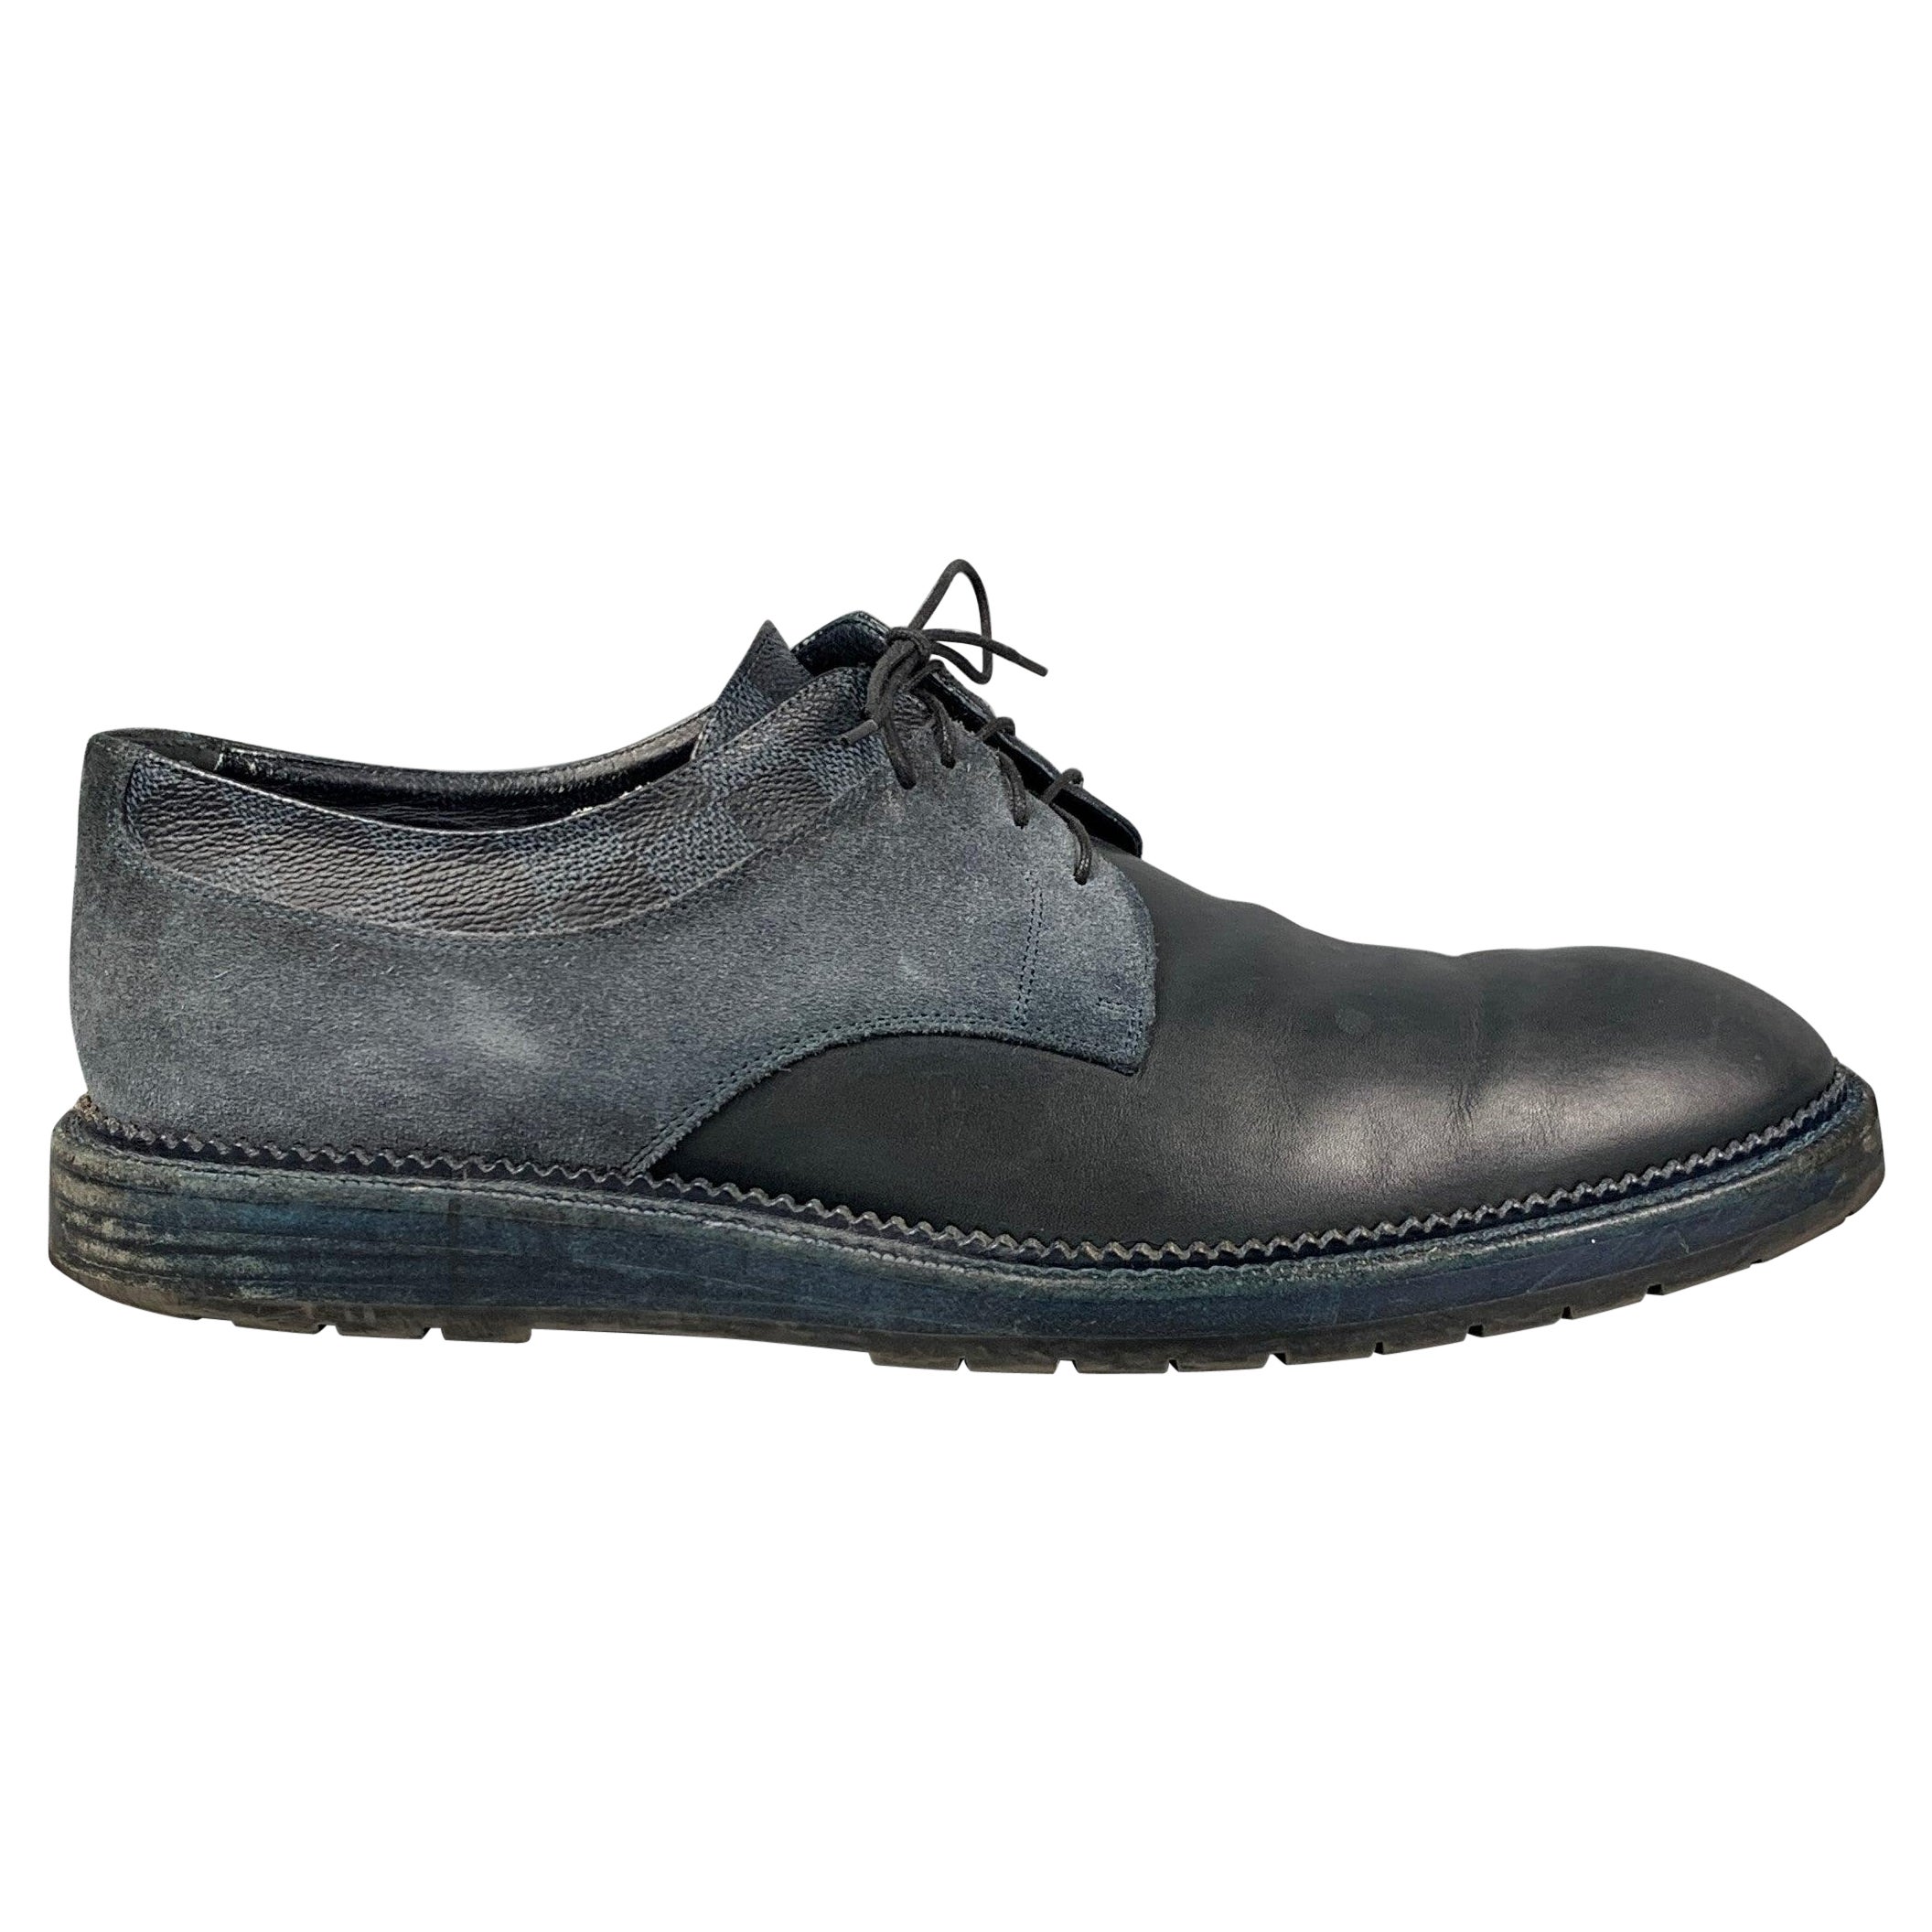 LOUIS VUITTON Size 10.5 Navy Blue Damier Leather Lace Up Shoes